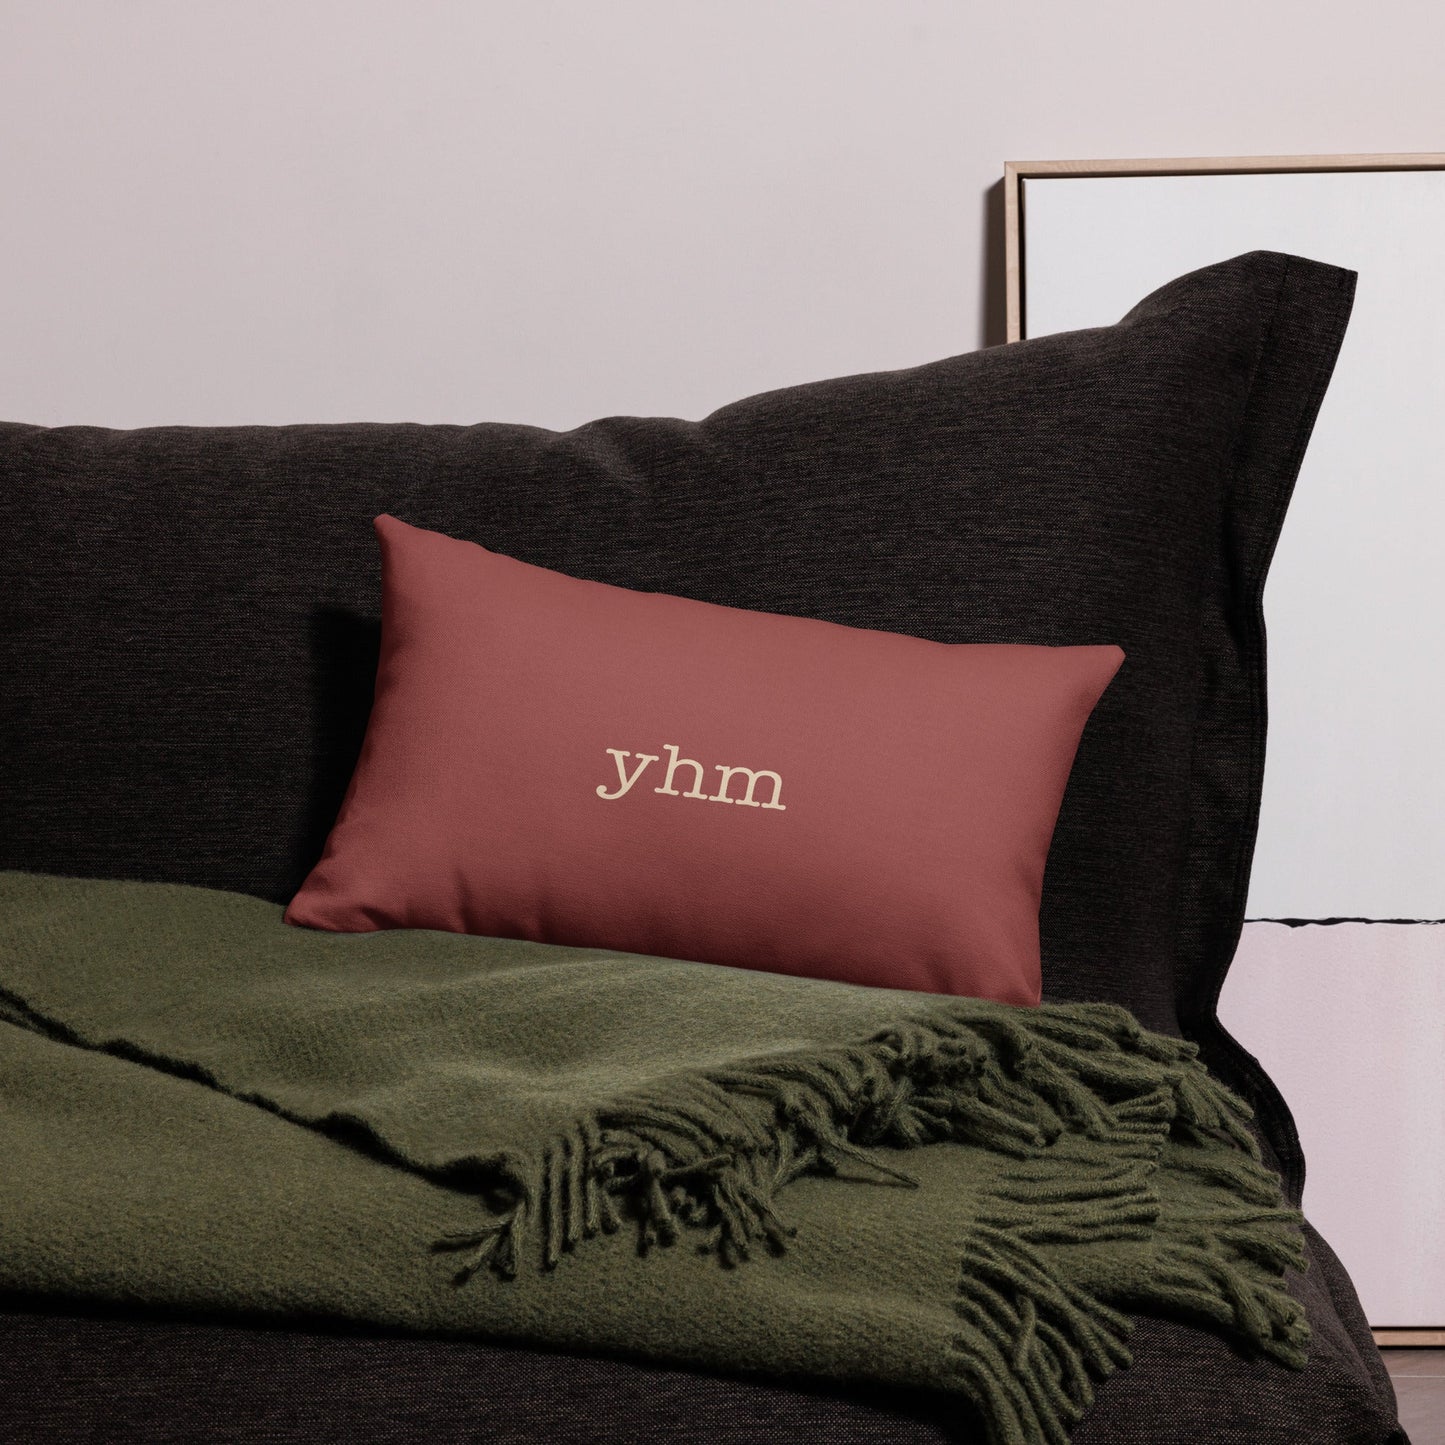 Typewriter Pillow - Terra Cotta • YUL Montreal • YHM Designs - Image 05